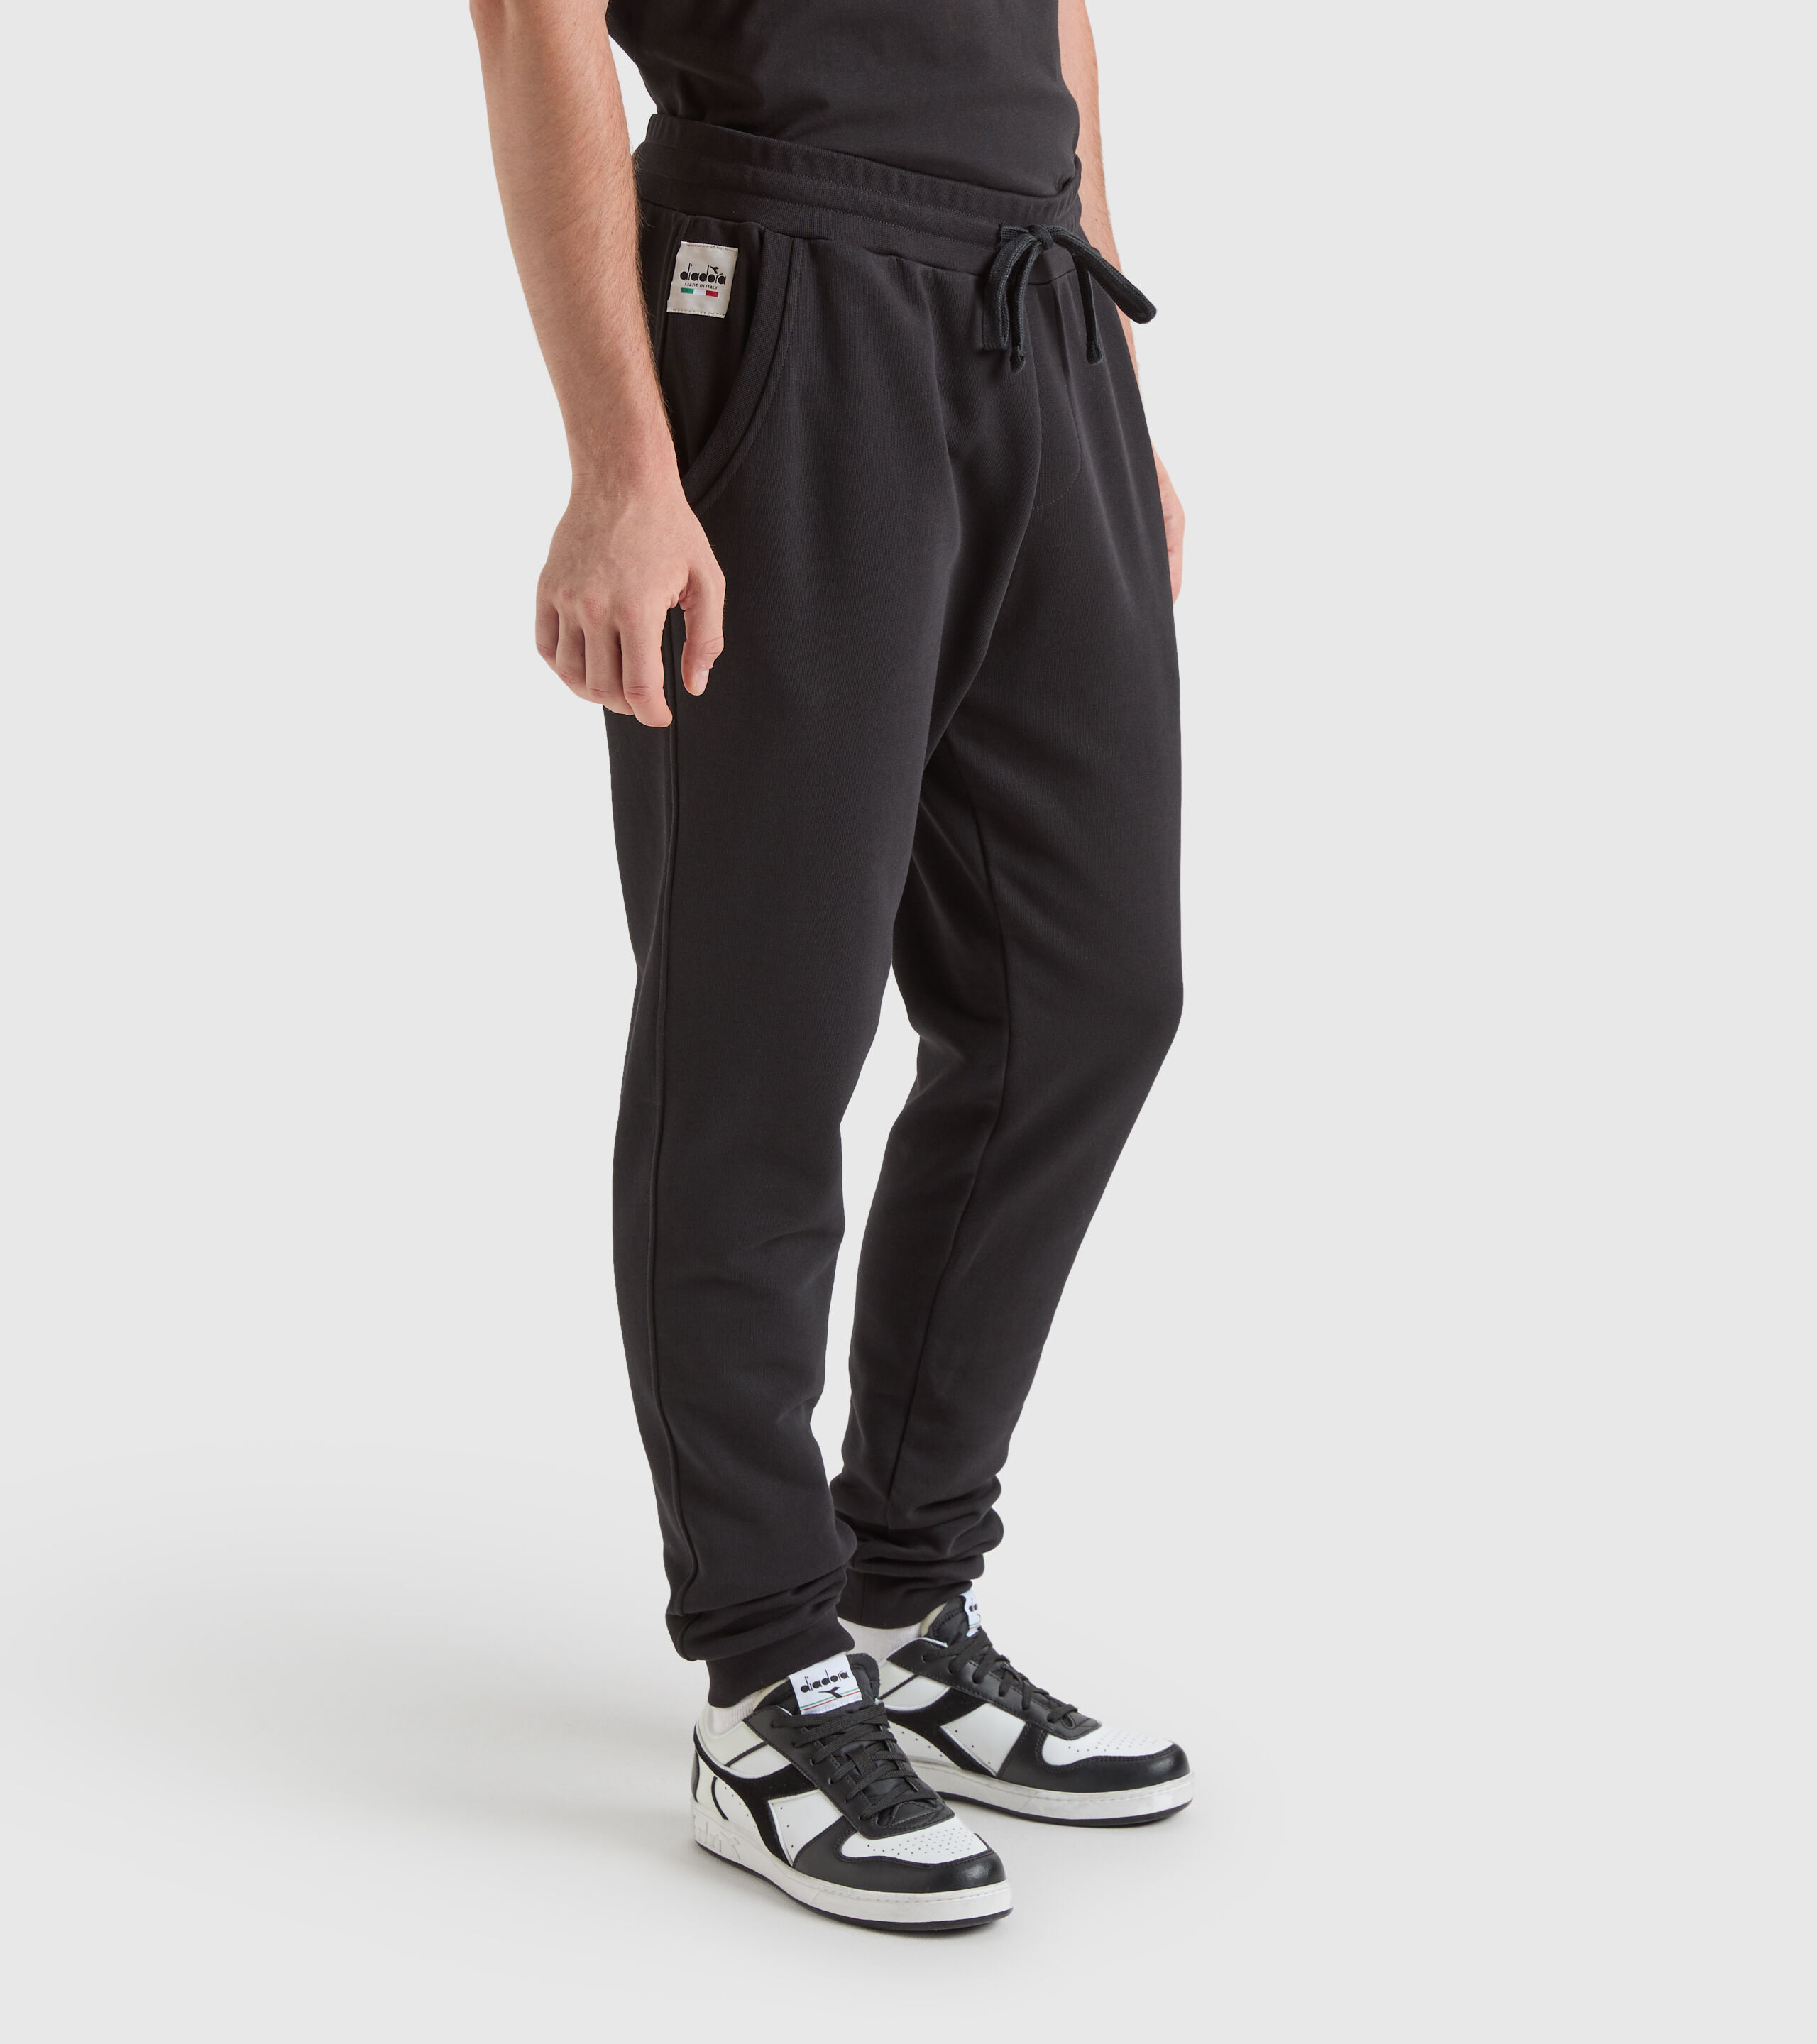 Buy Black Trousers  Pants for Men by Arrow Sports Online  Ajiocom